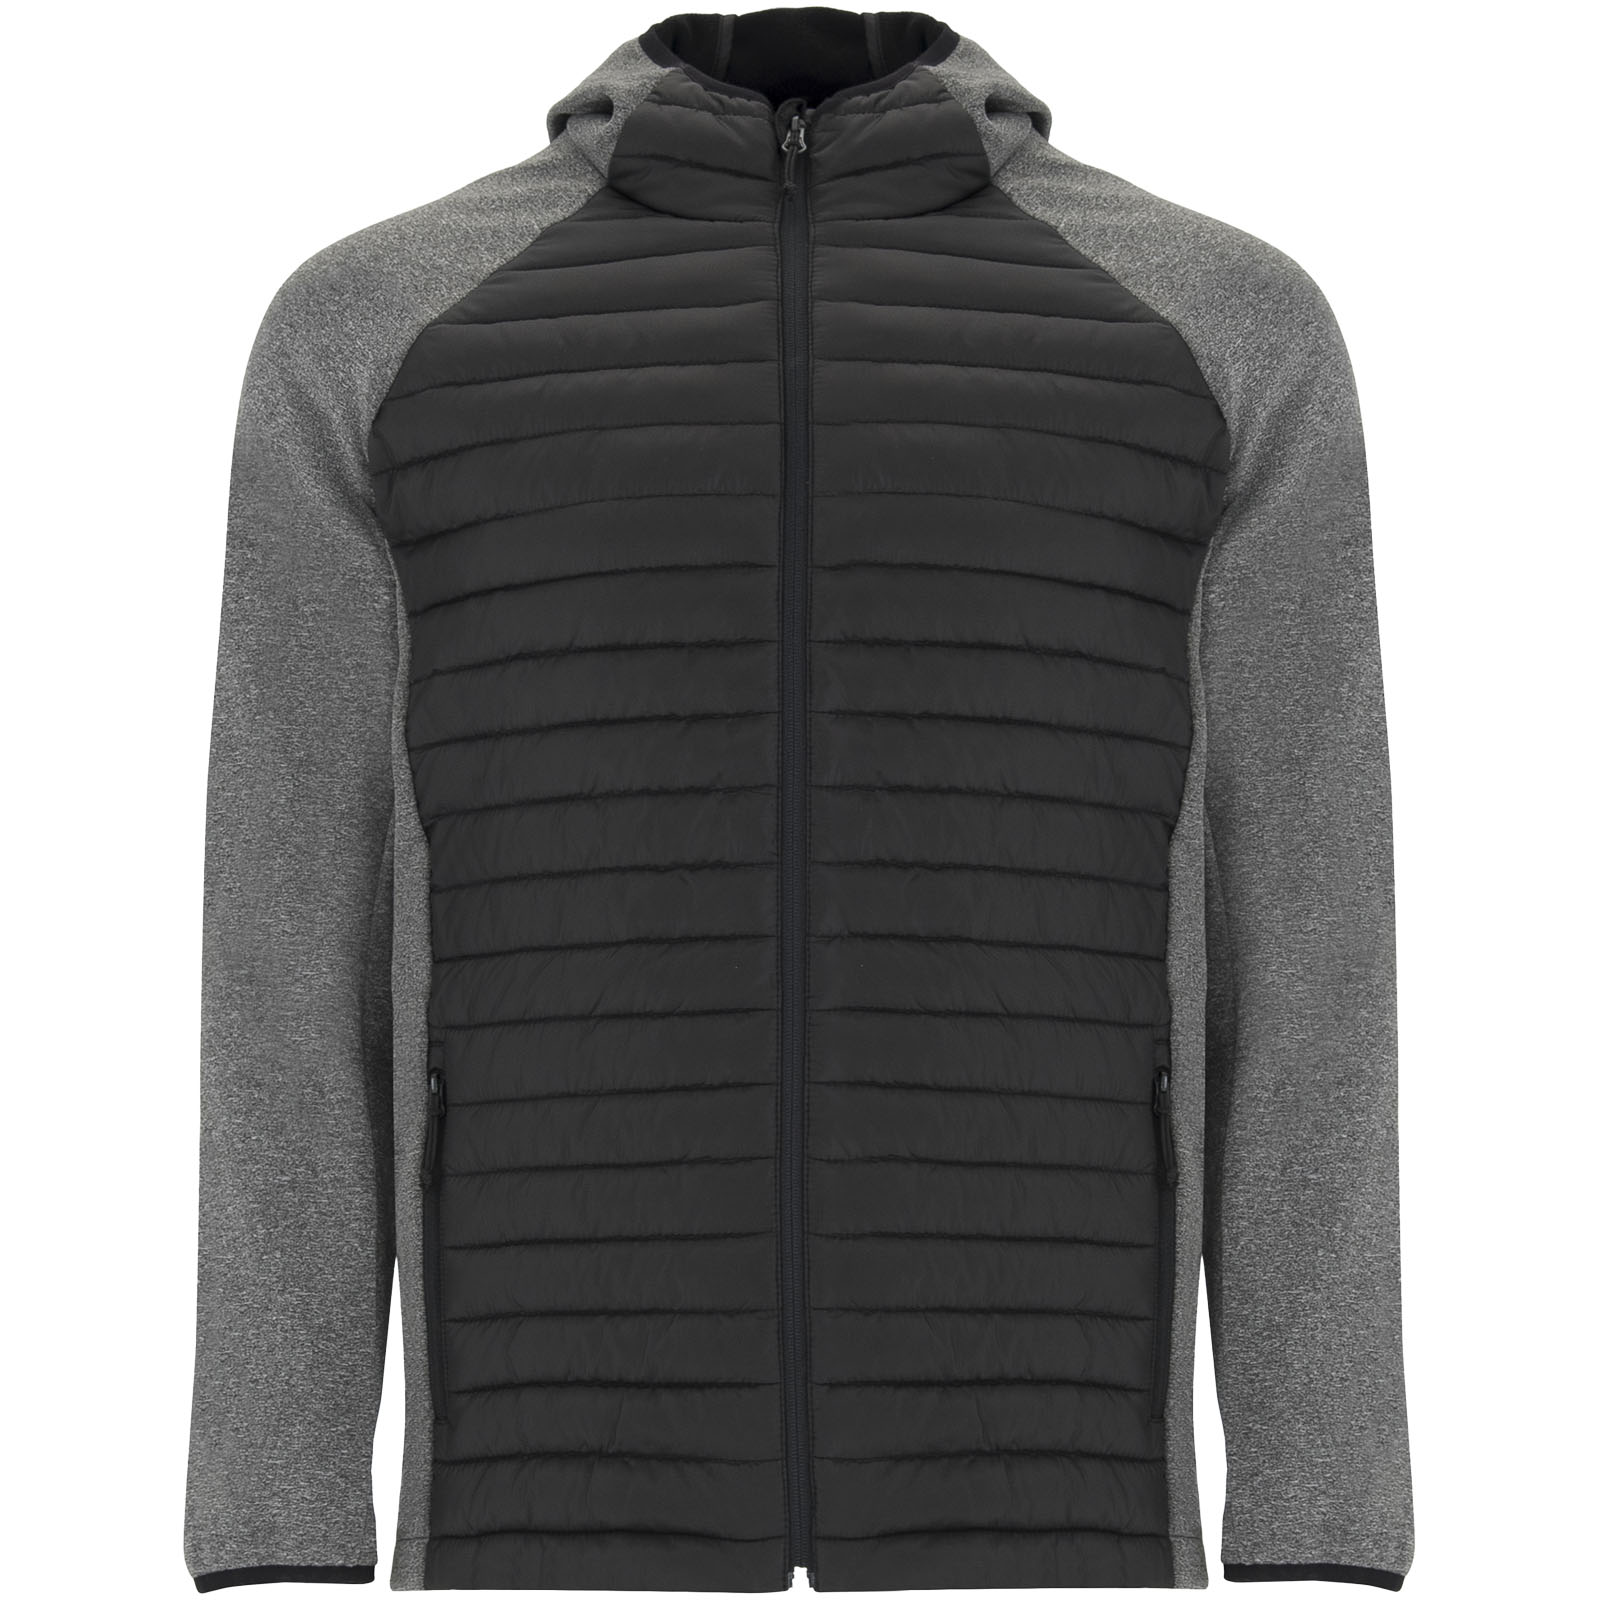 Advertising Jackets - Minsk unisex hybrid insulated jacket